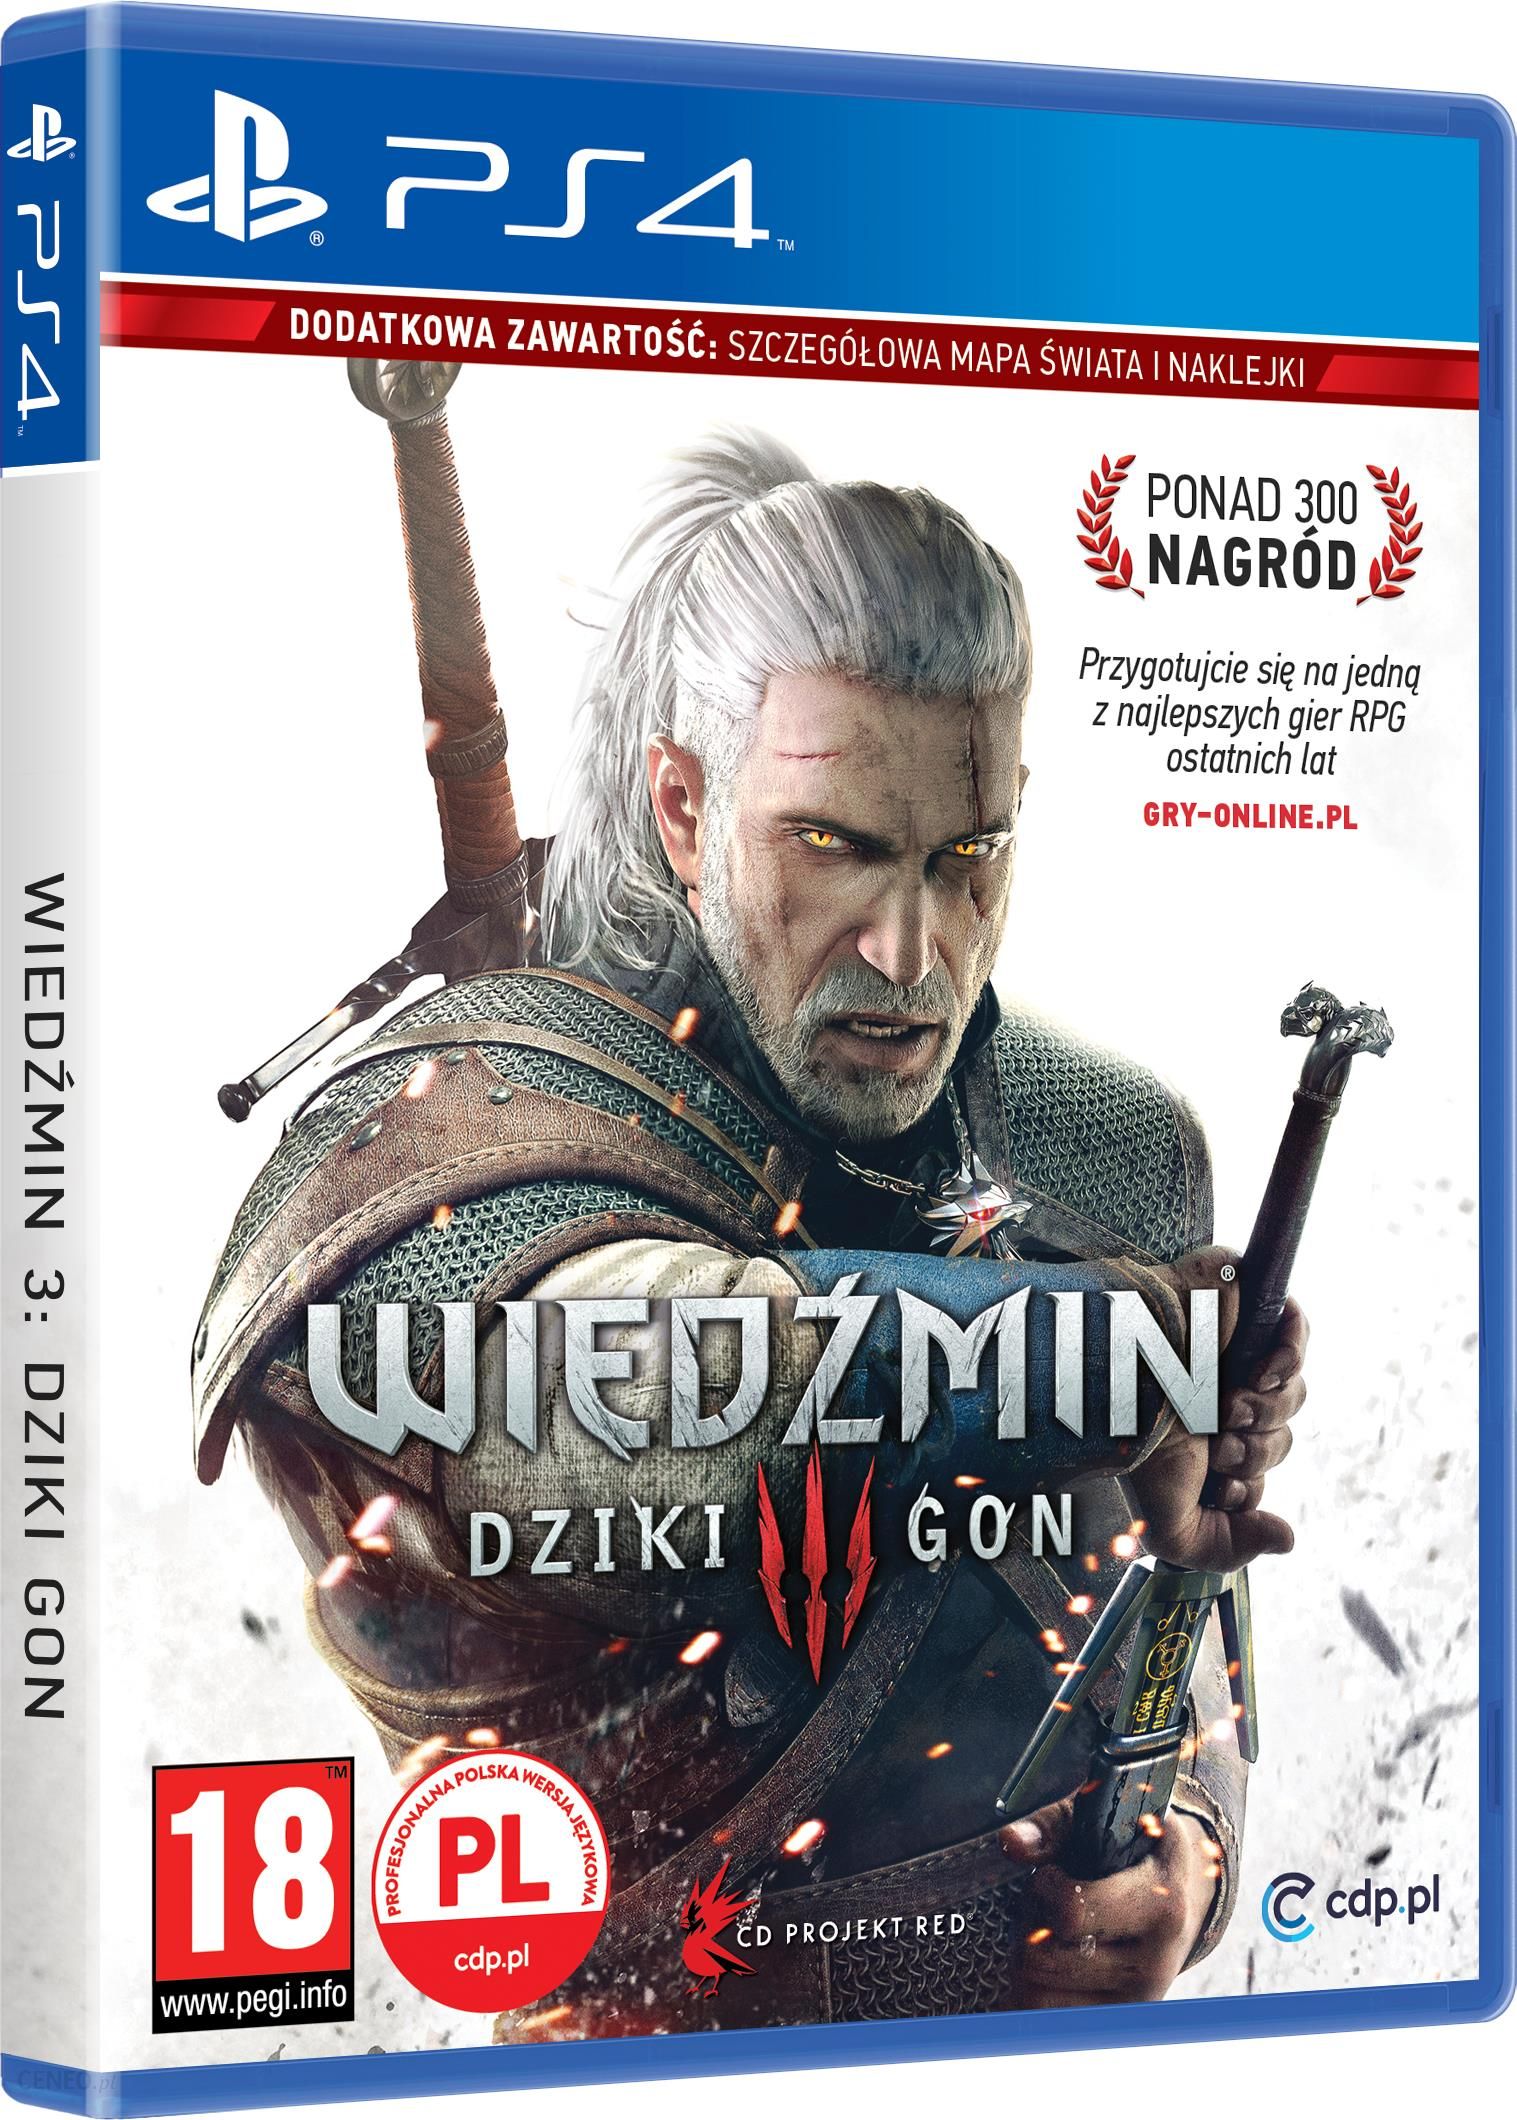 Wiedźmin 3 Dziki Gon (Gra PS4) i opinie - Ceneo.pl